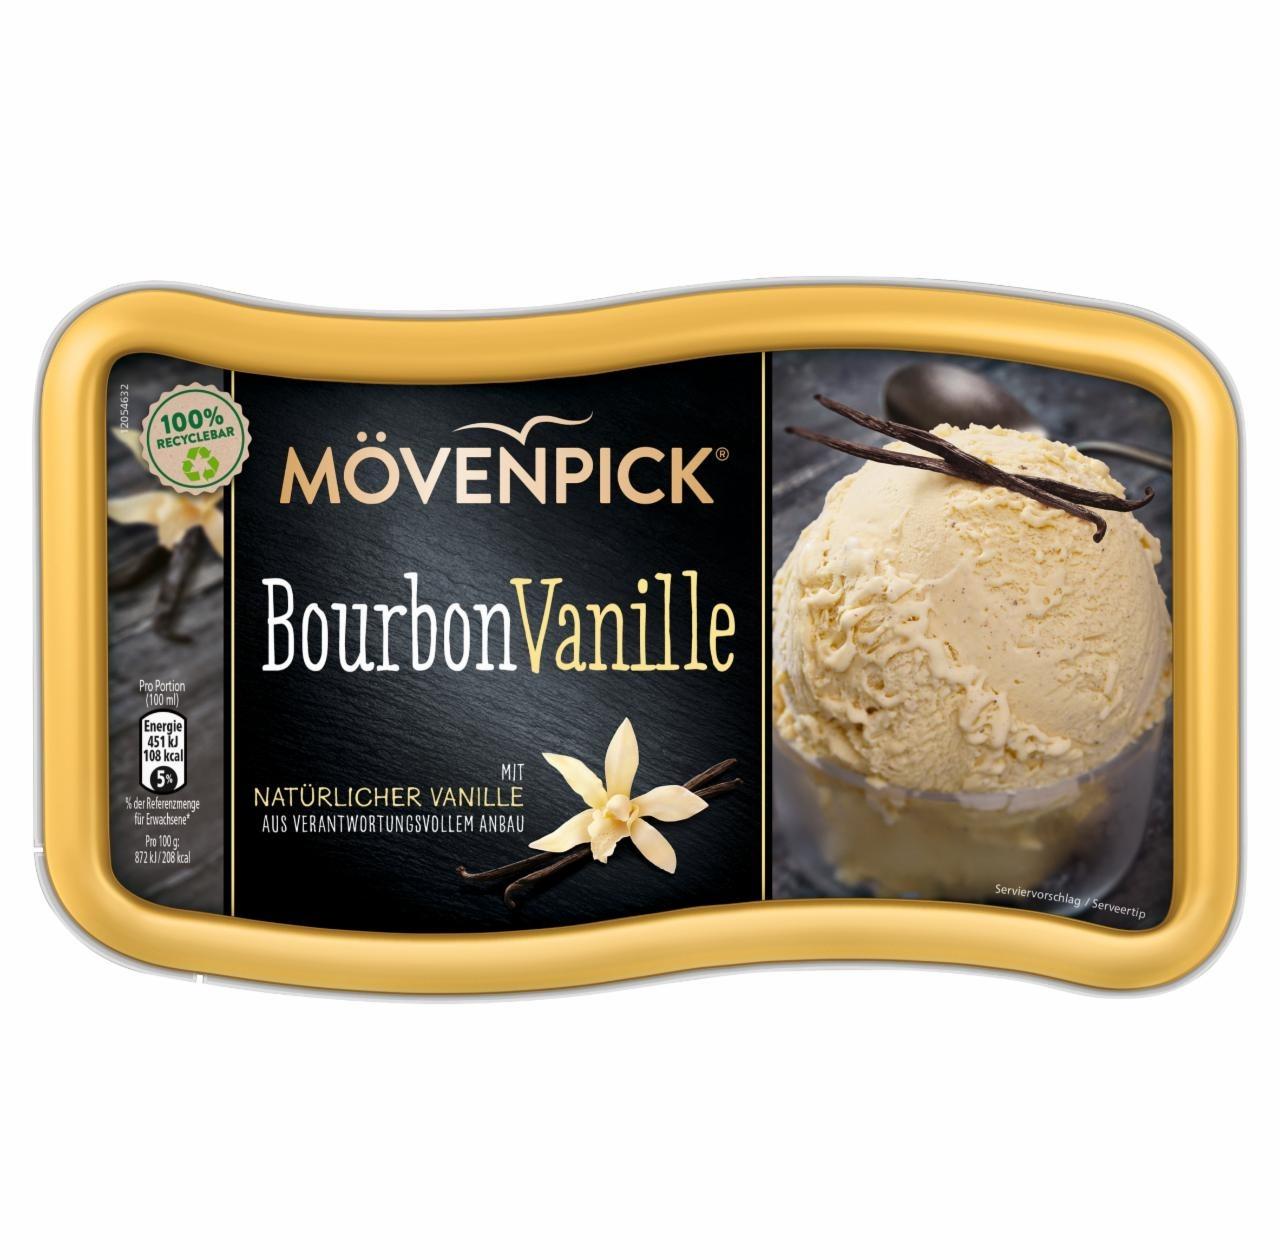 Képek - Mövenpick Bourbon vaníliás jégkrém 900 ml